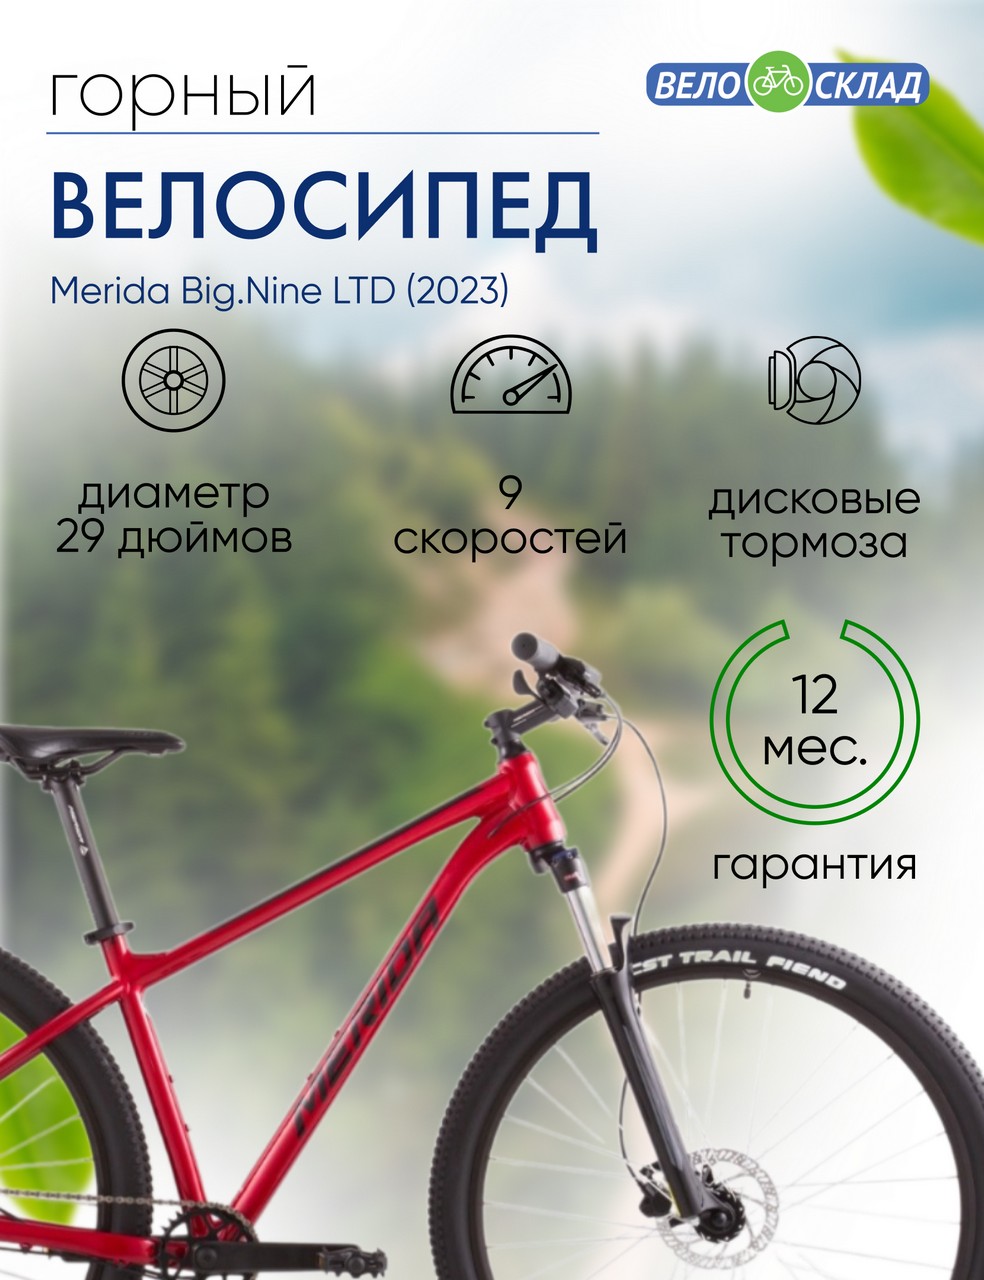 Горный велосипед Merida Big.Nine LTD, год 2023, цвет Красный-Черный, ростовка 14.5